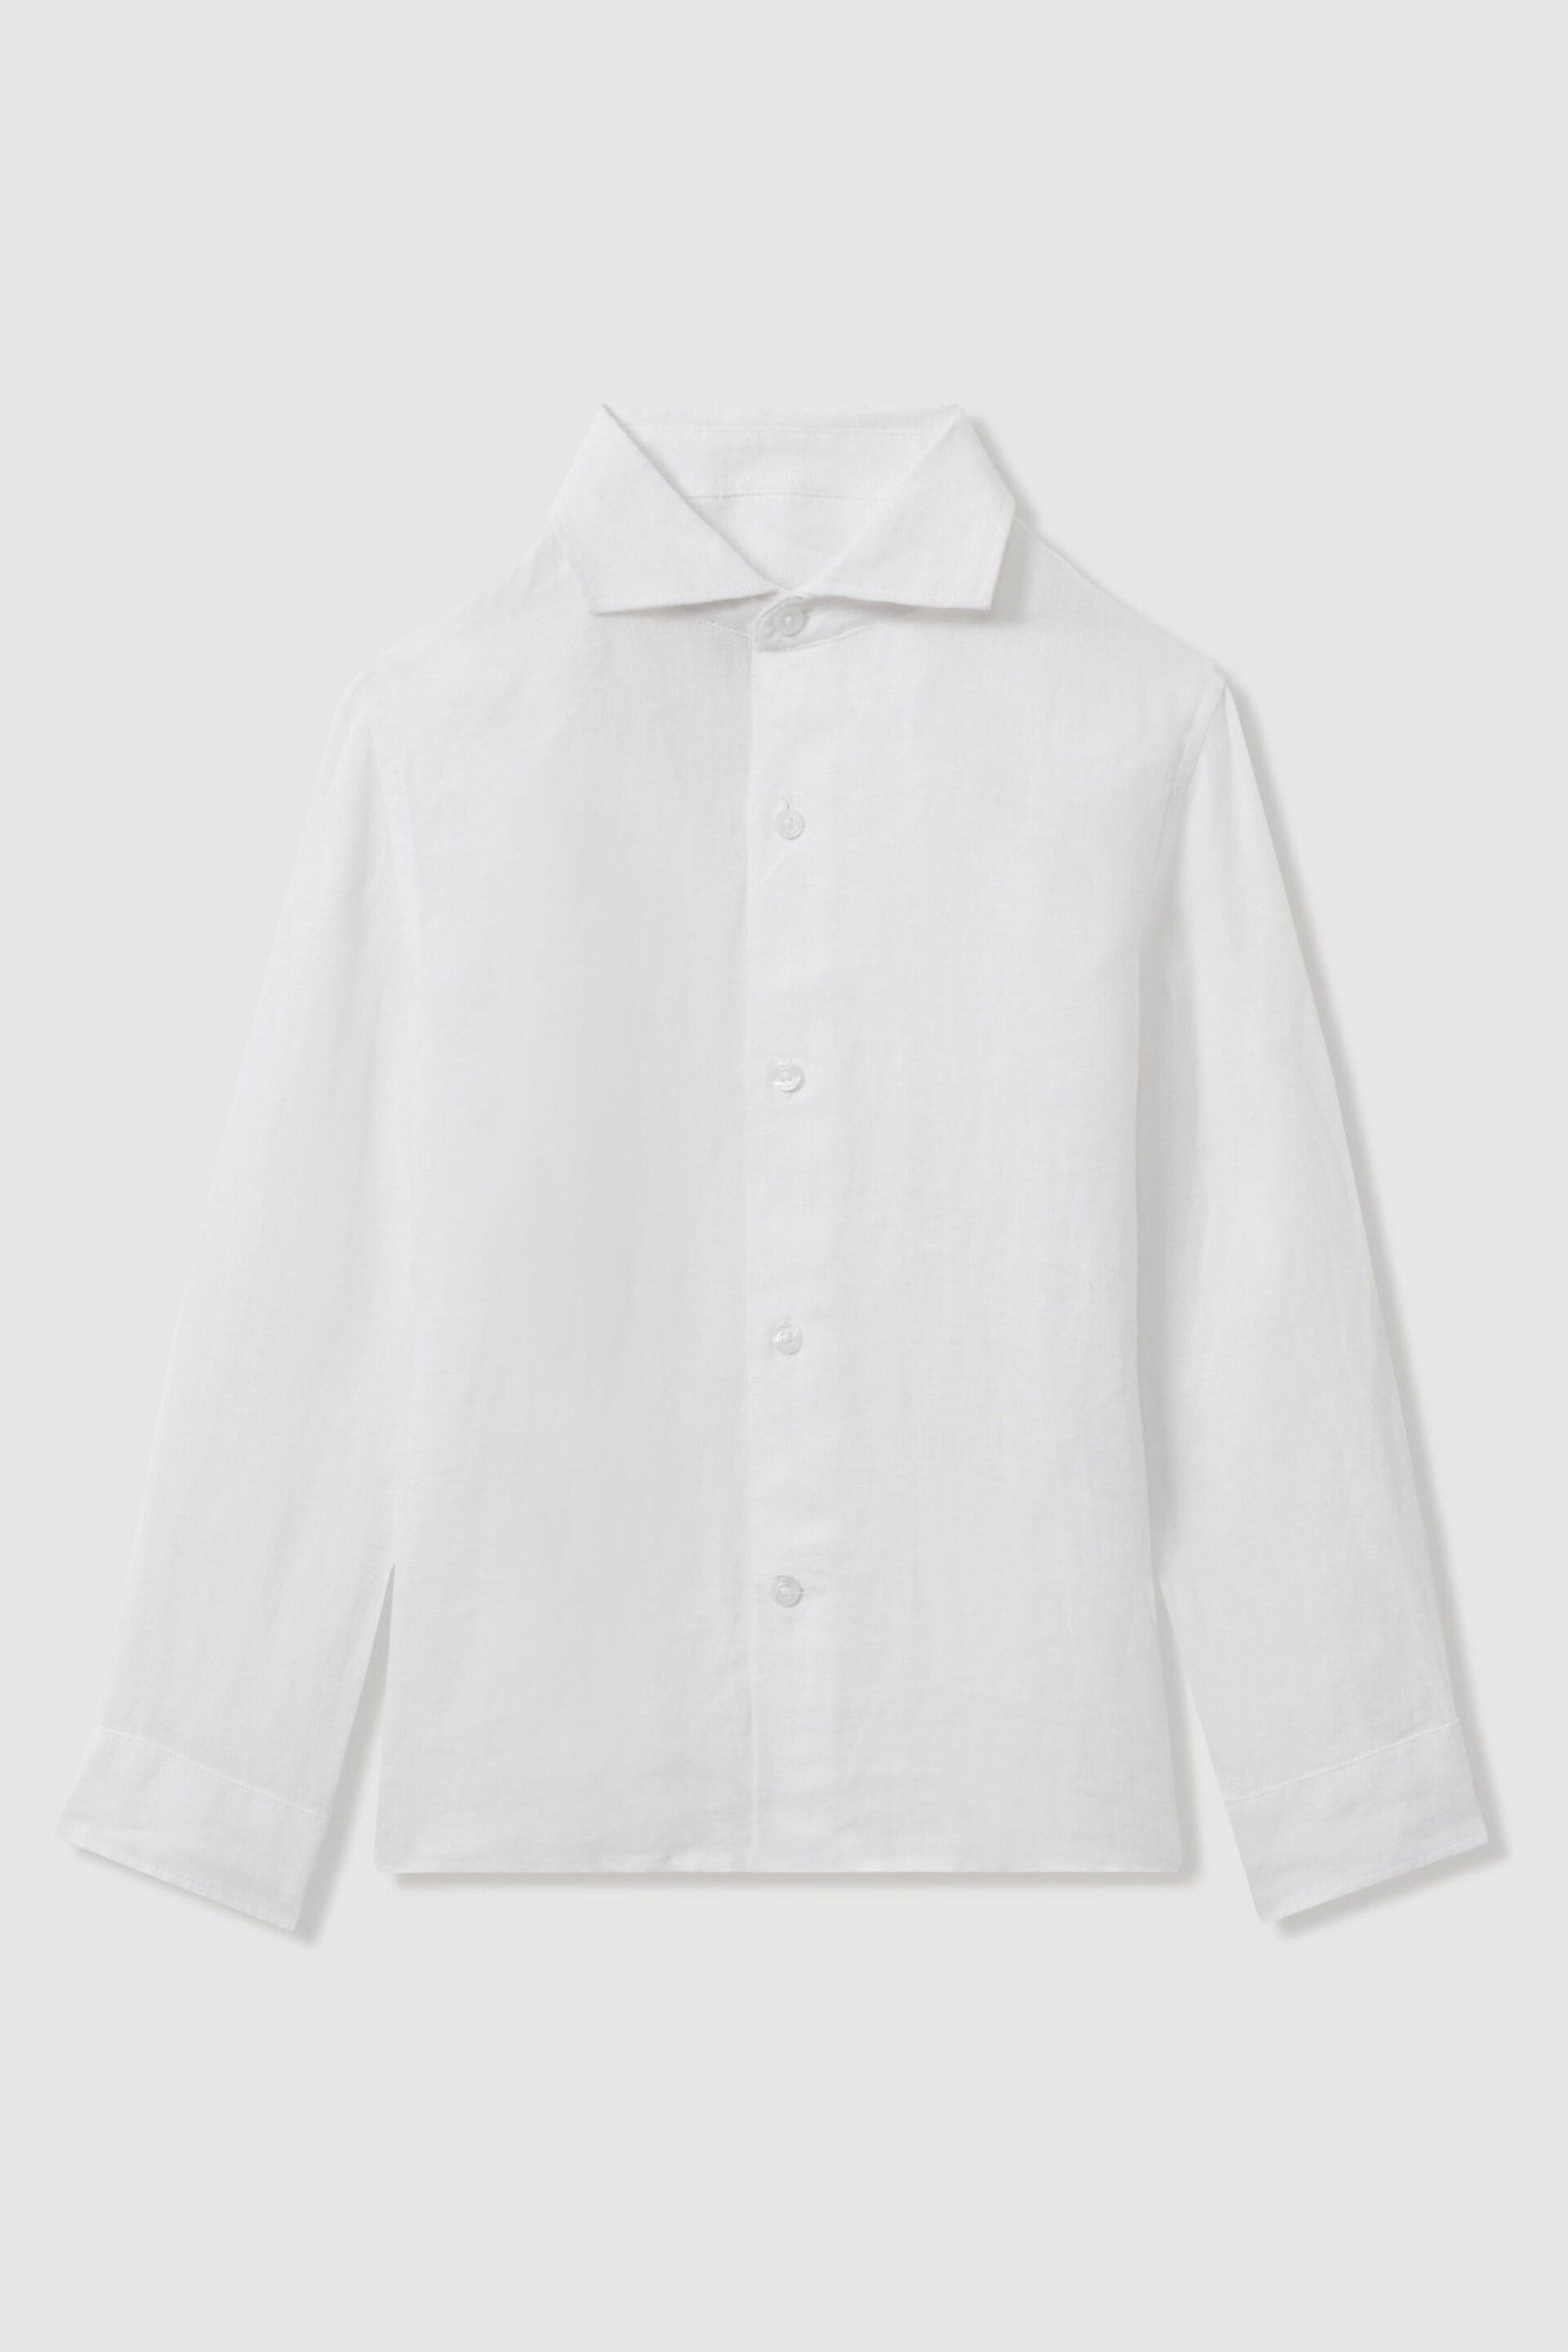 Reiss White Ruban Teen Linen Cutaway Collar Shirt - Image 1 of 5